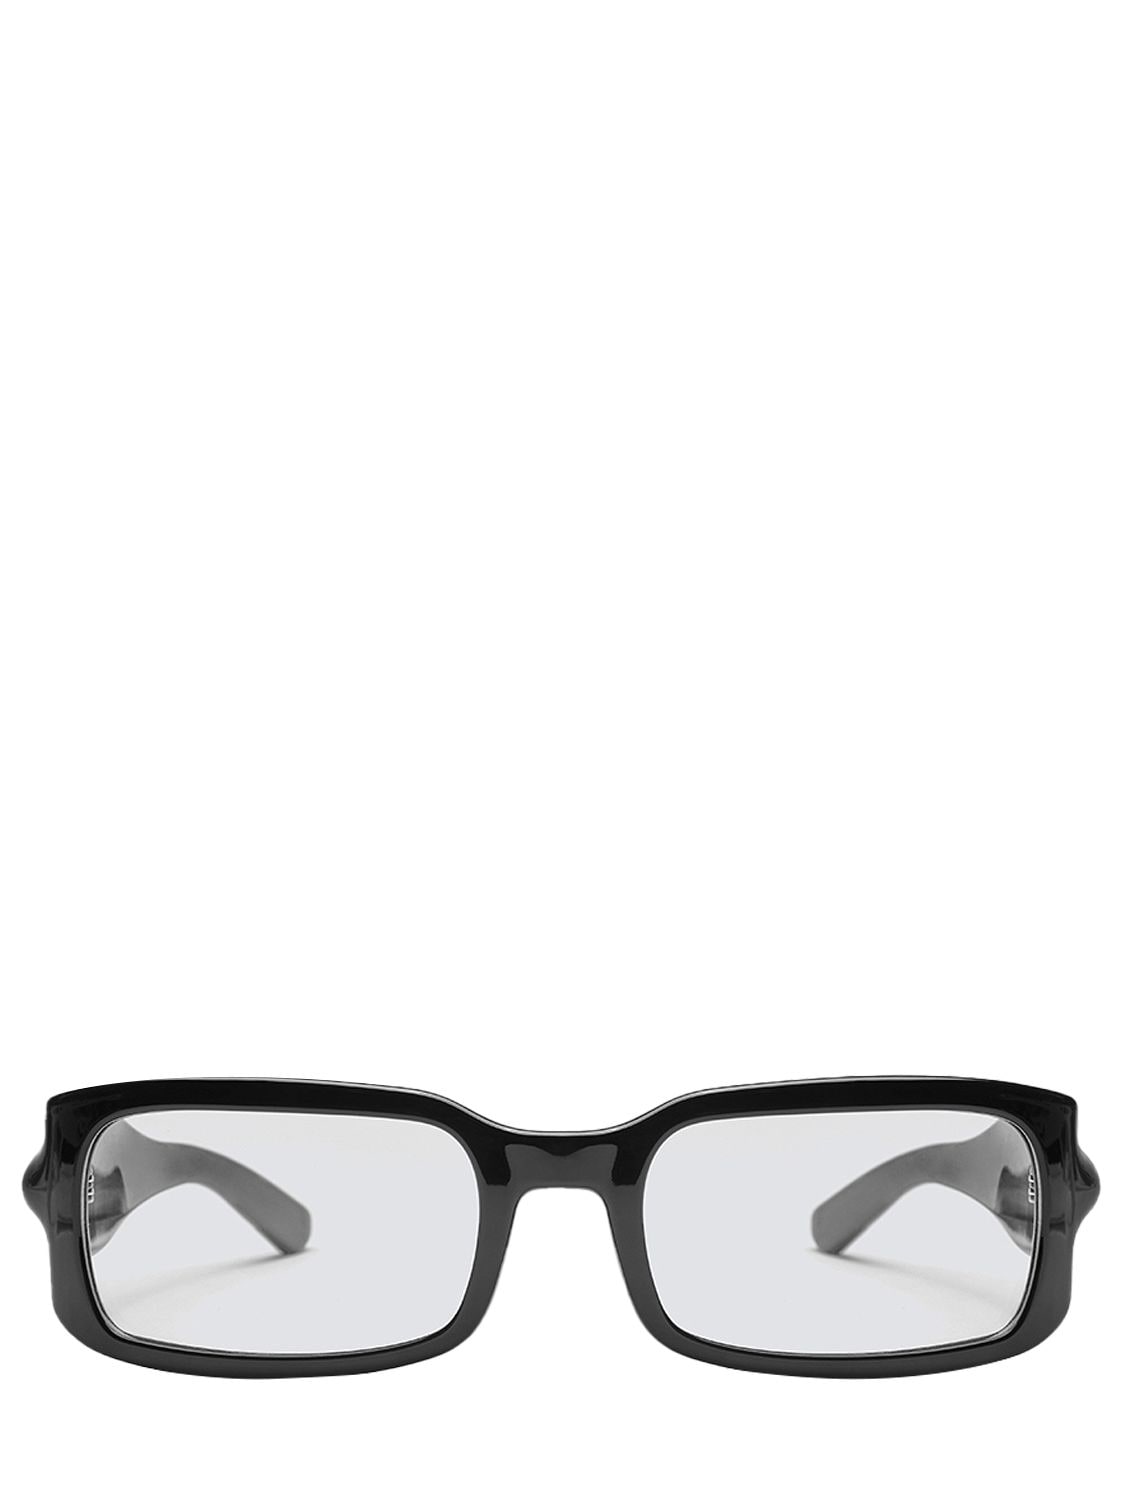 Gloop Black Squared Eyeglasses – WOMEN > ACCESSORIES > SUNGLASSES